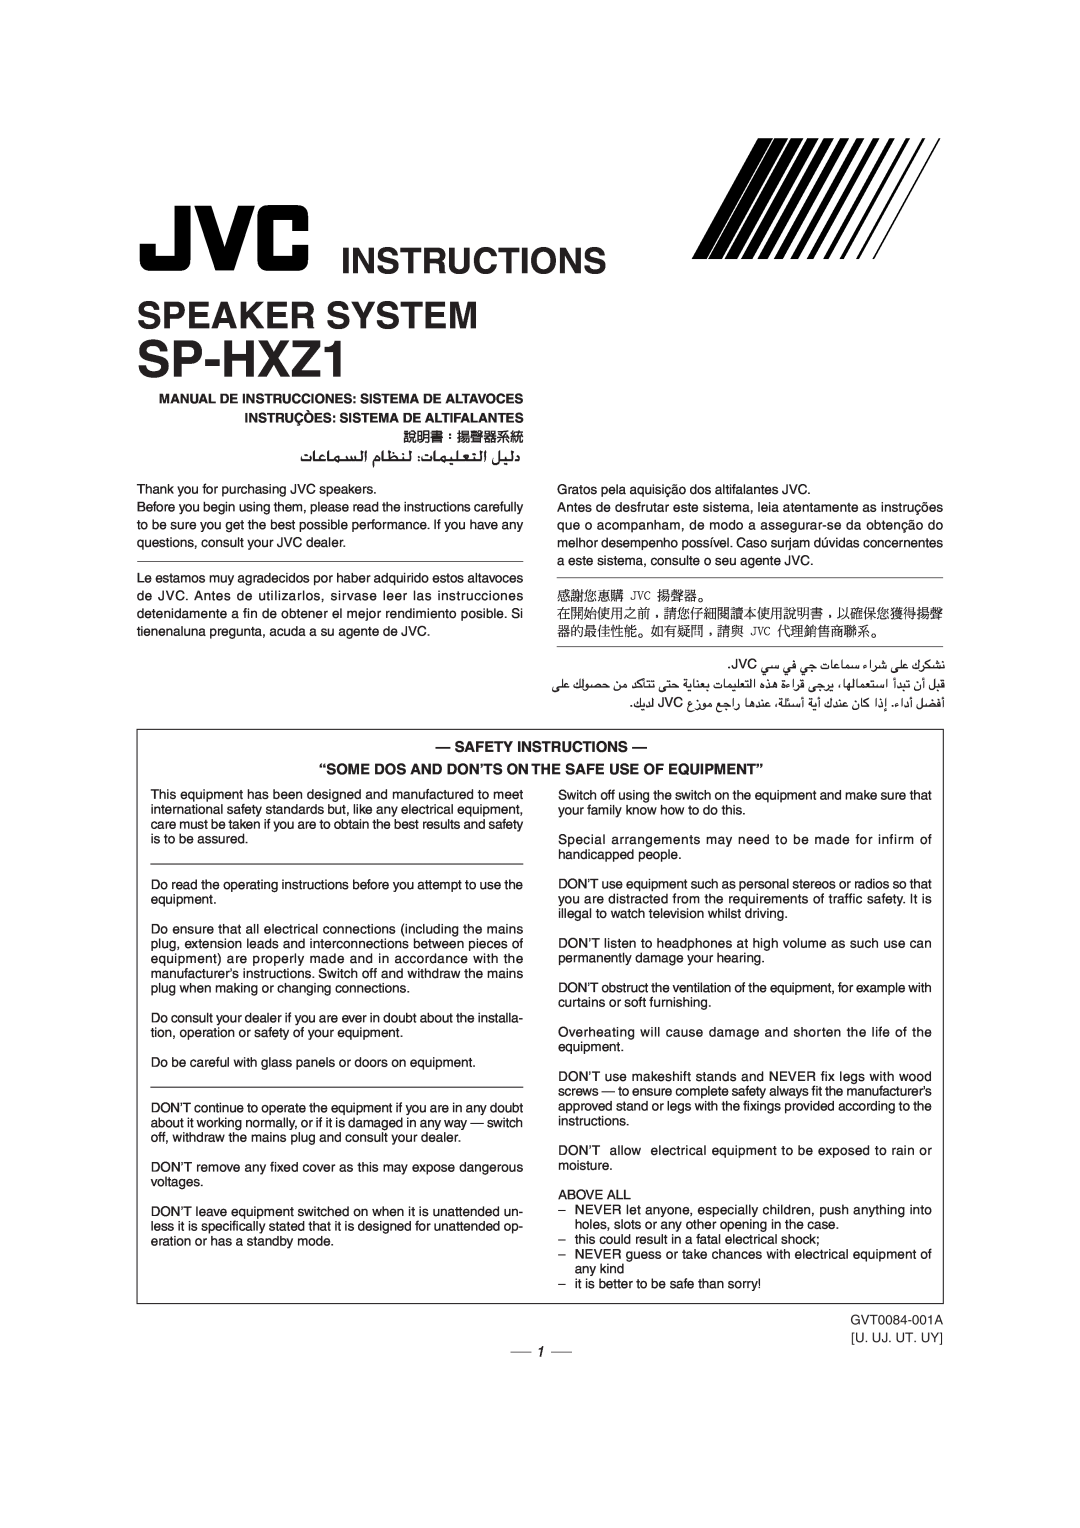 JVC CA-HXZ1R manual Instructions, SP-HXZ1, Speaker System, Manual De Instrucciones Sistema De Altavoces, 說明書︰揚聲器系統 